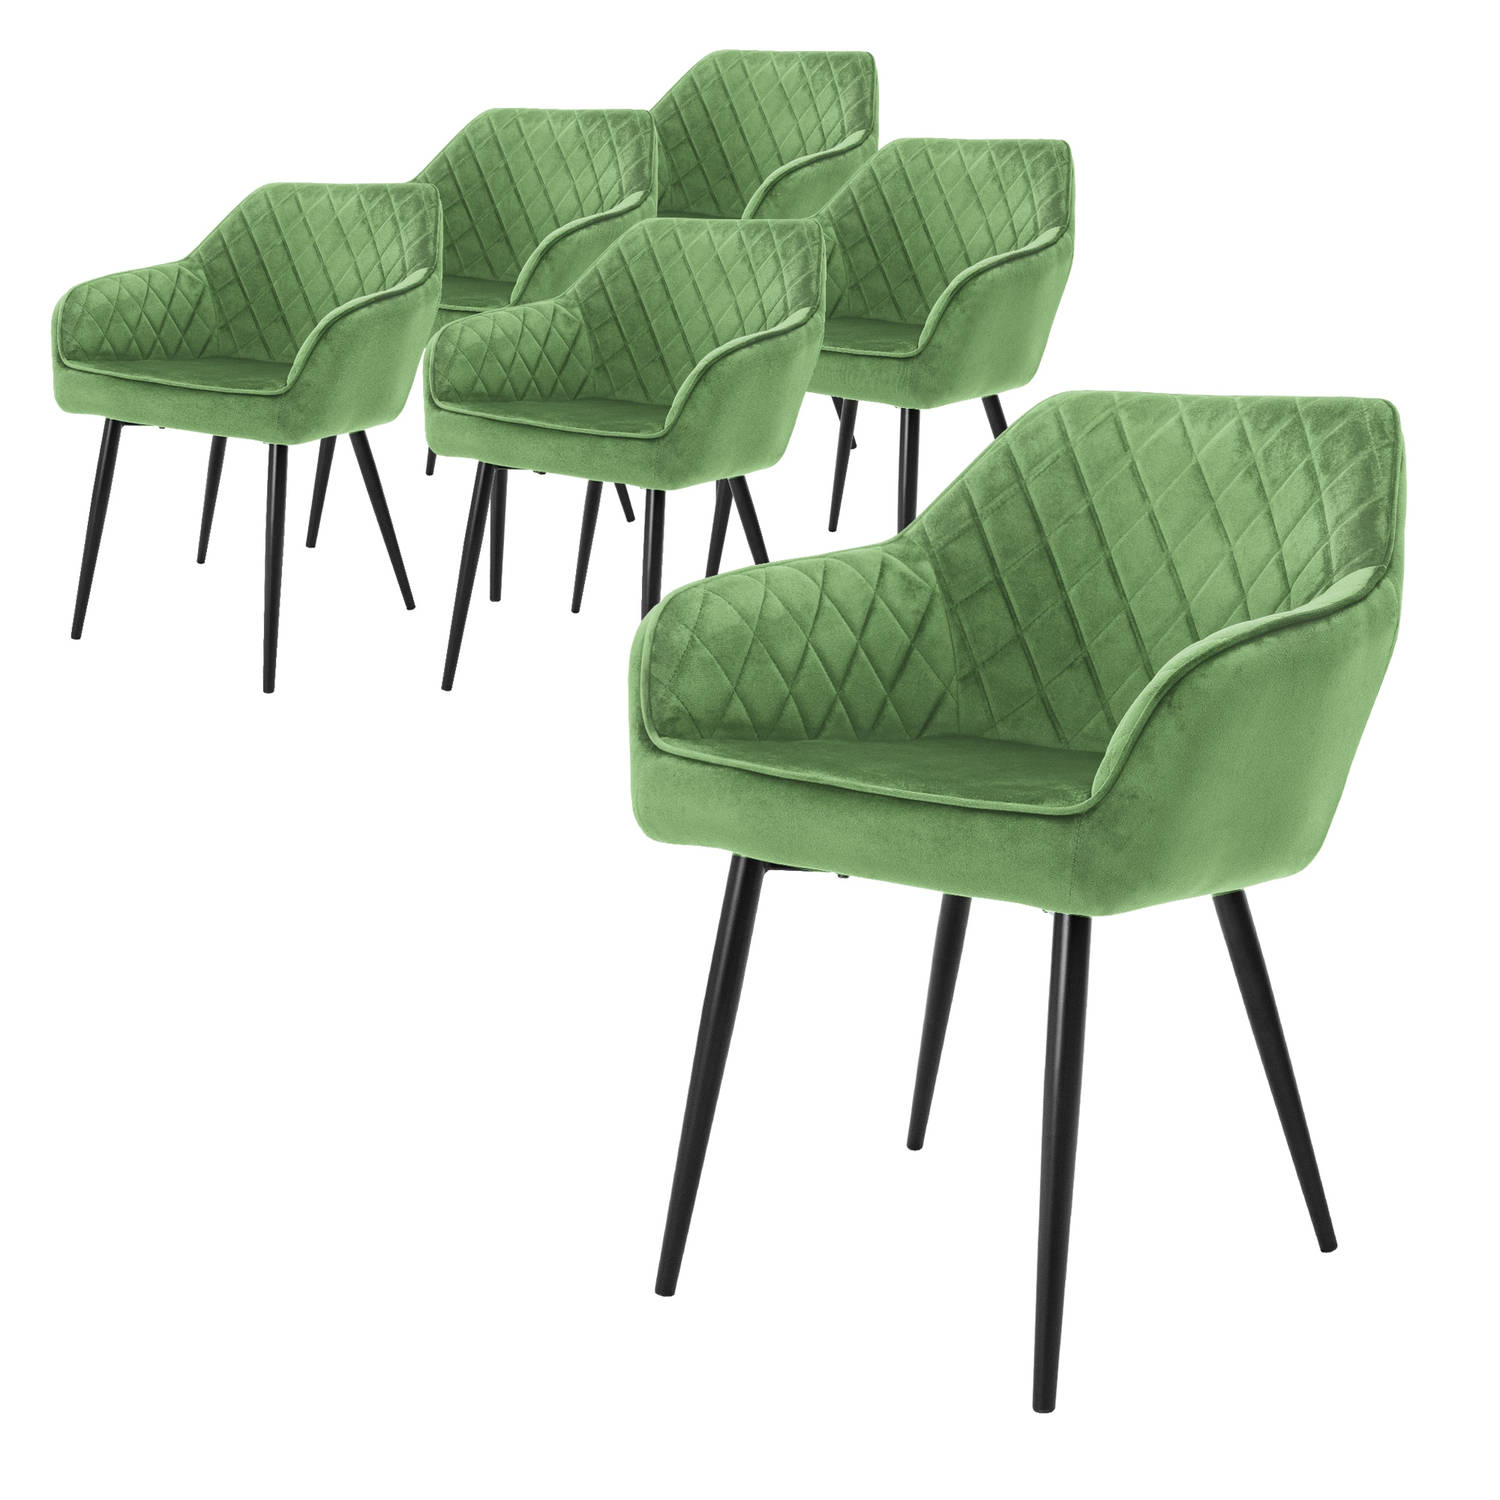 ML-Design set van 6 eetkamerstoelen met armleuning en rugleuning, groen, keukenstoel met fluwelen bekleding, gestoffeerde stoel met metalen poten, ergonomische stoel voor eettafel,